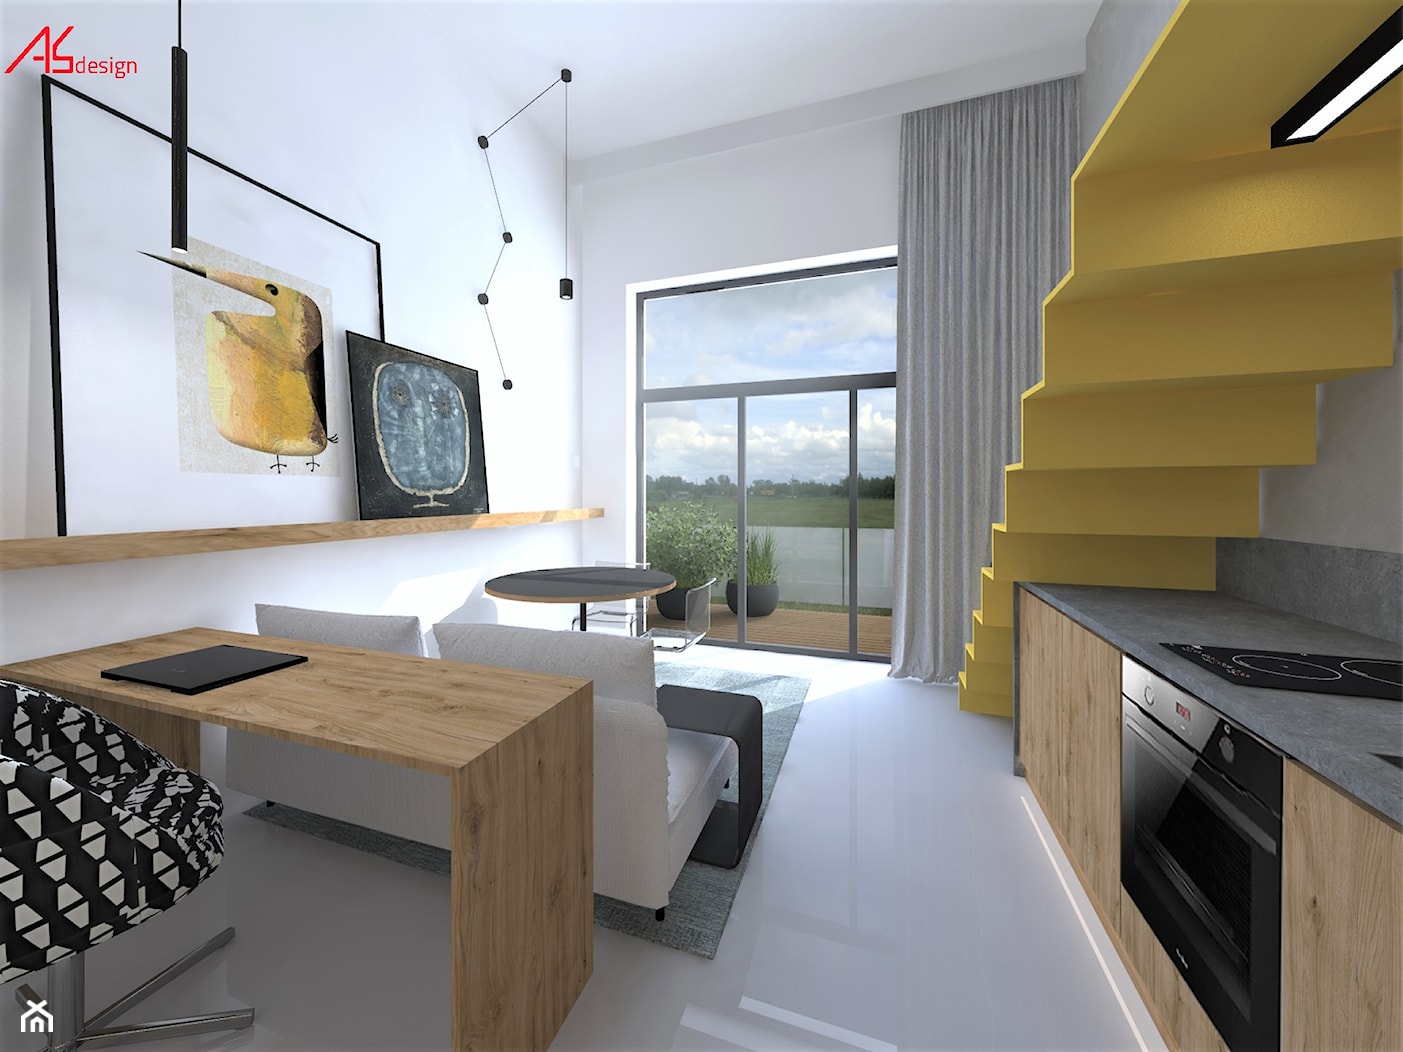 Mikromieszkanie z antersolą - salon z kuchnią - zdjęcie od ASdesign PROJEKTY WNĘTRZ i ELEWACJI - Homebook